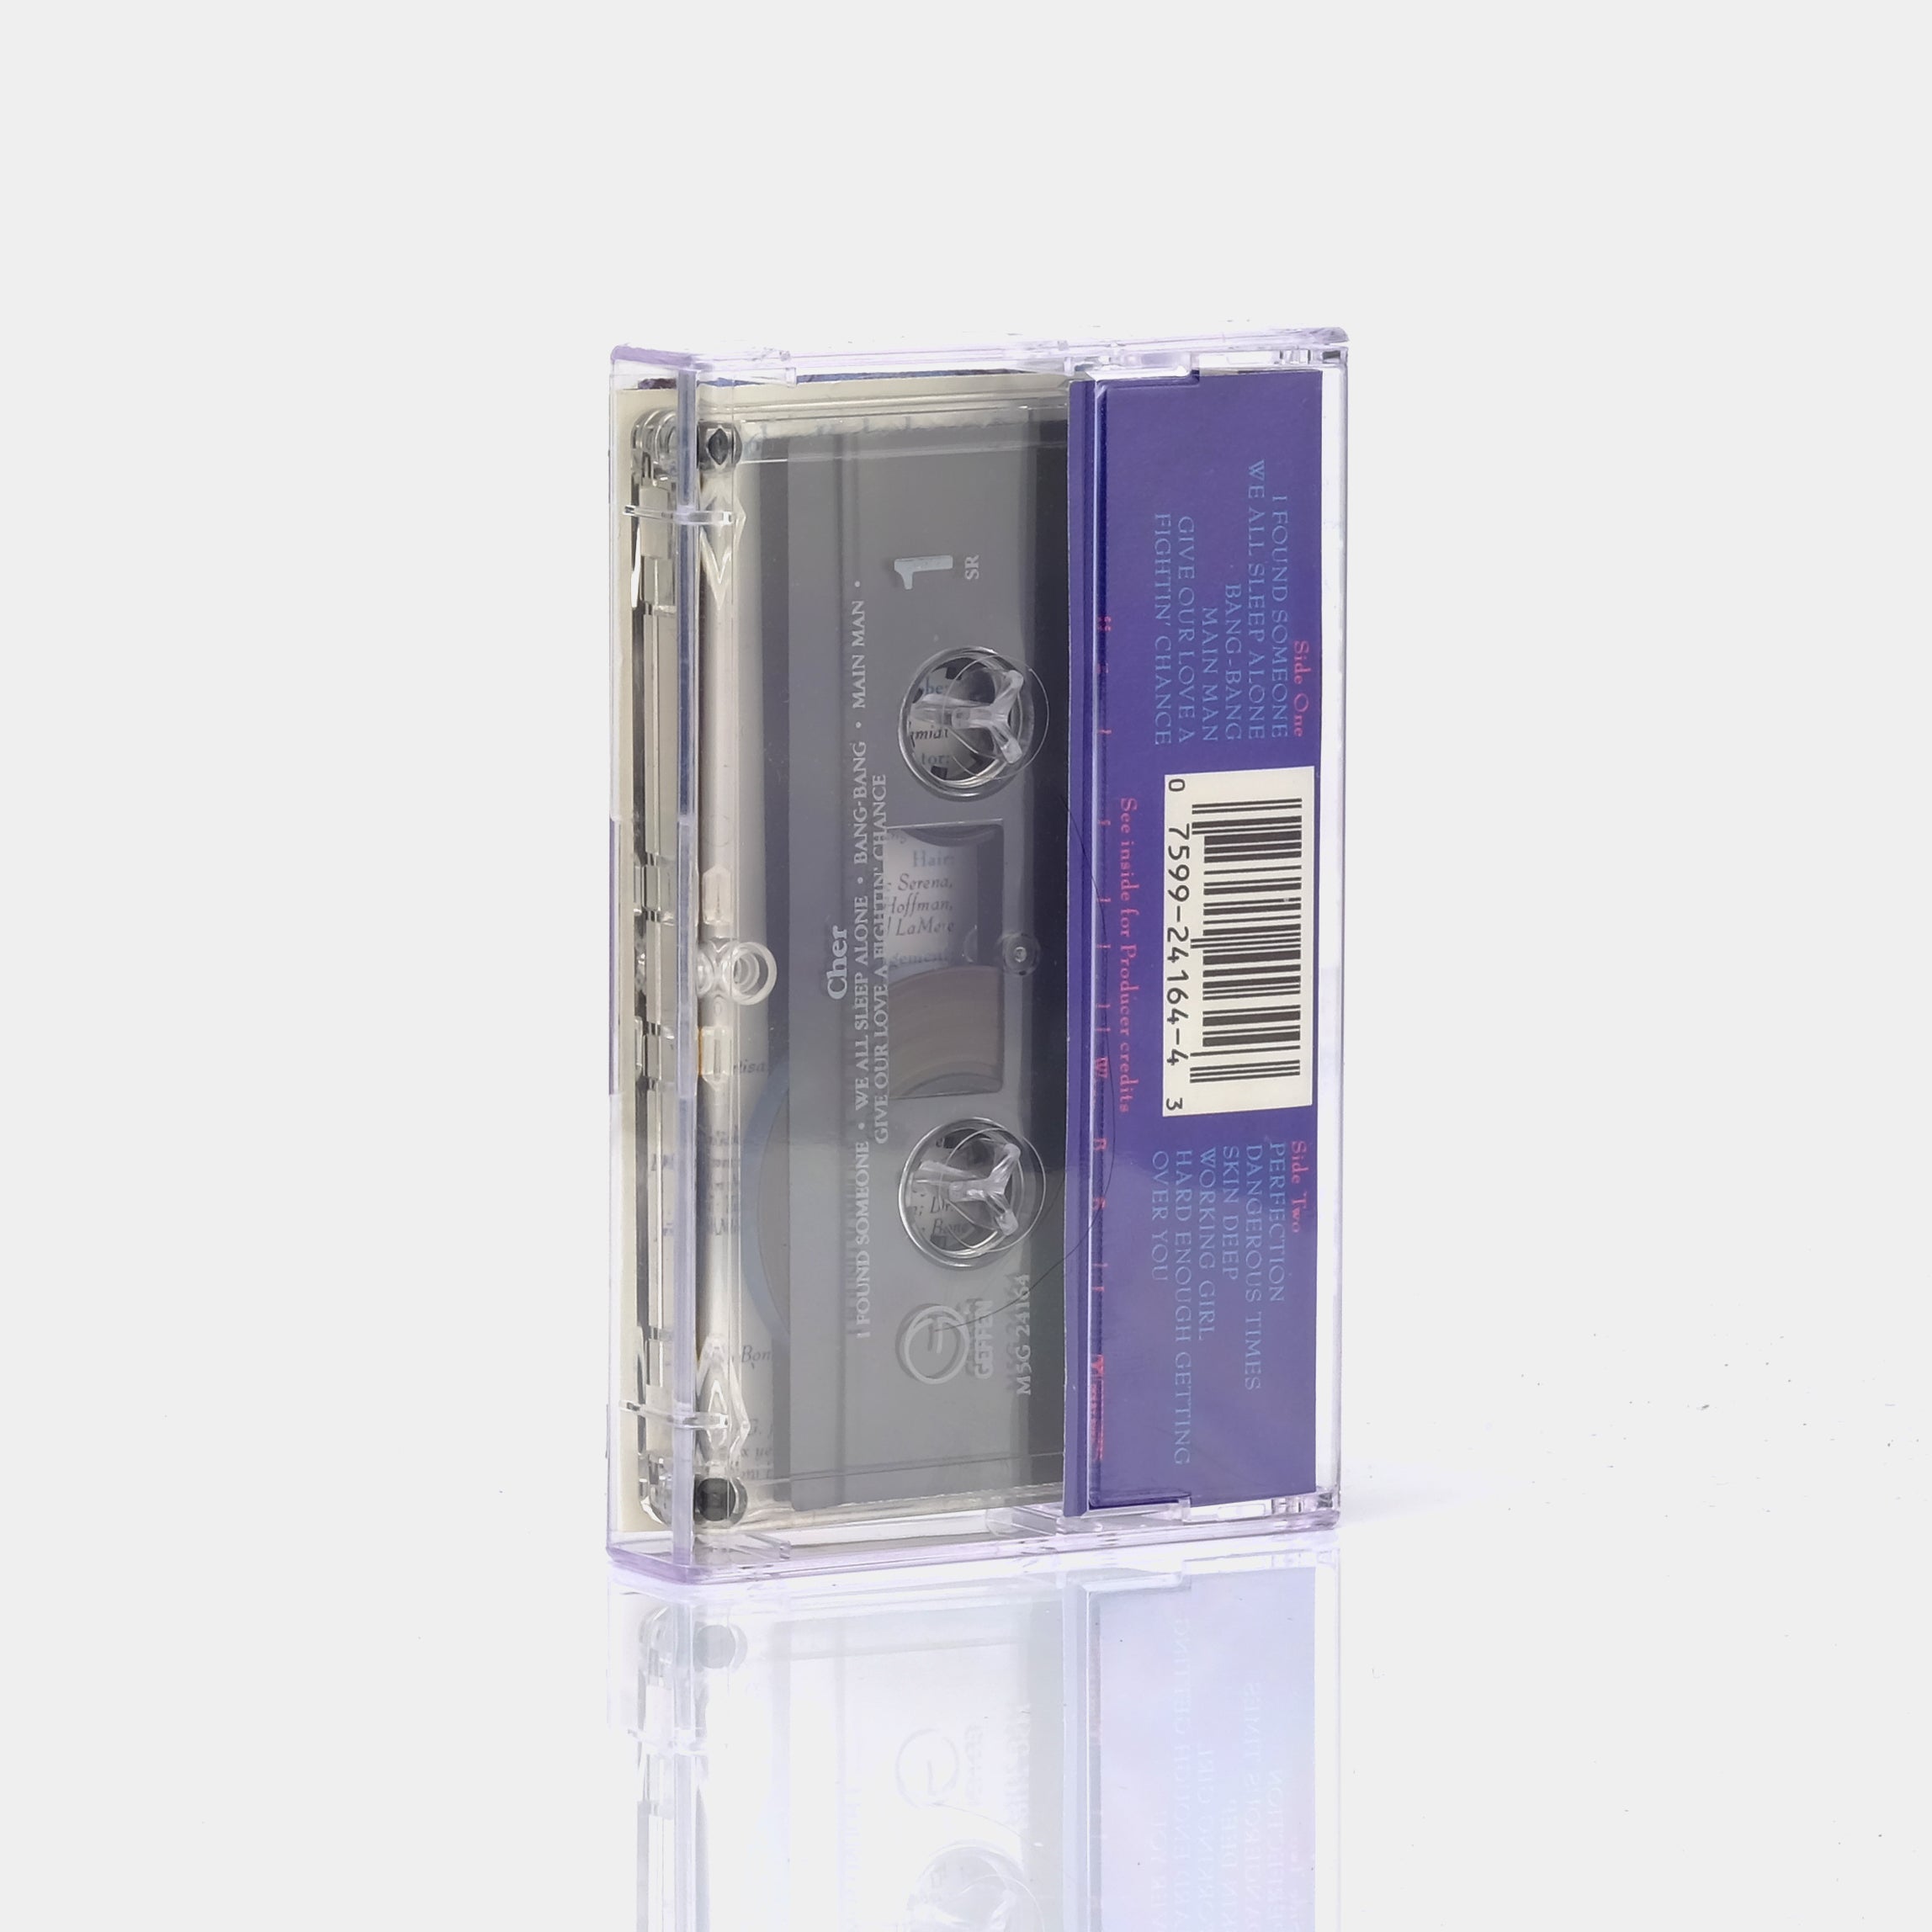 Cher - Cher Cassette Tape